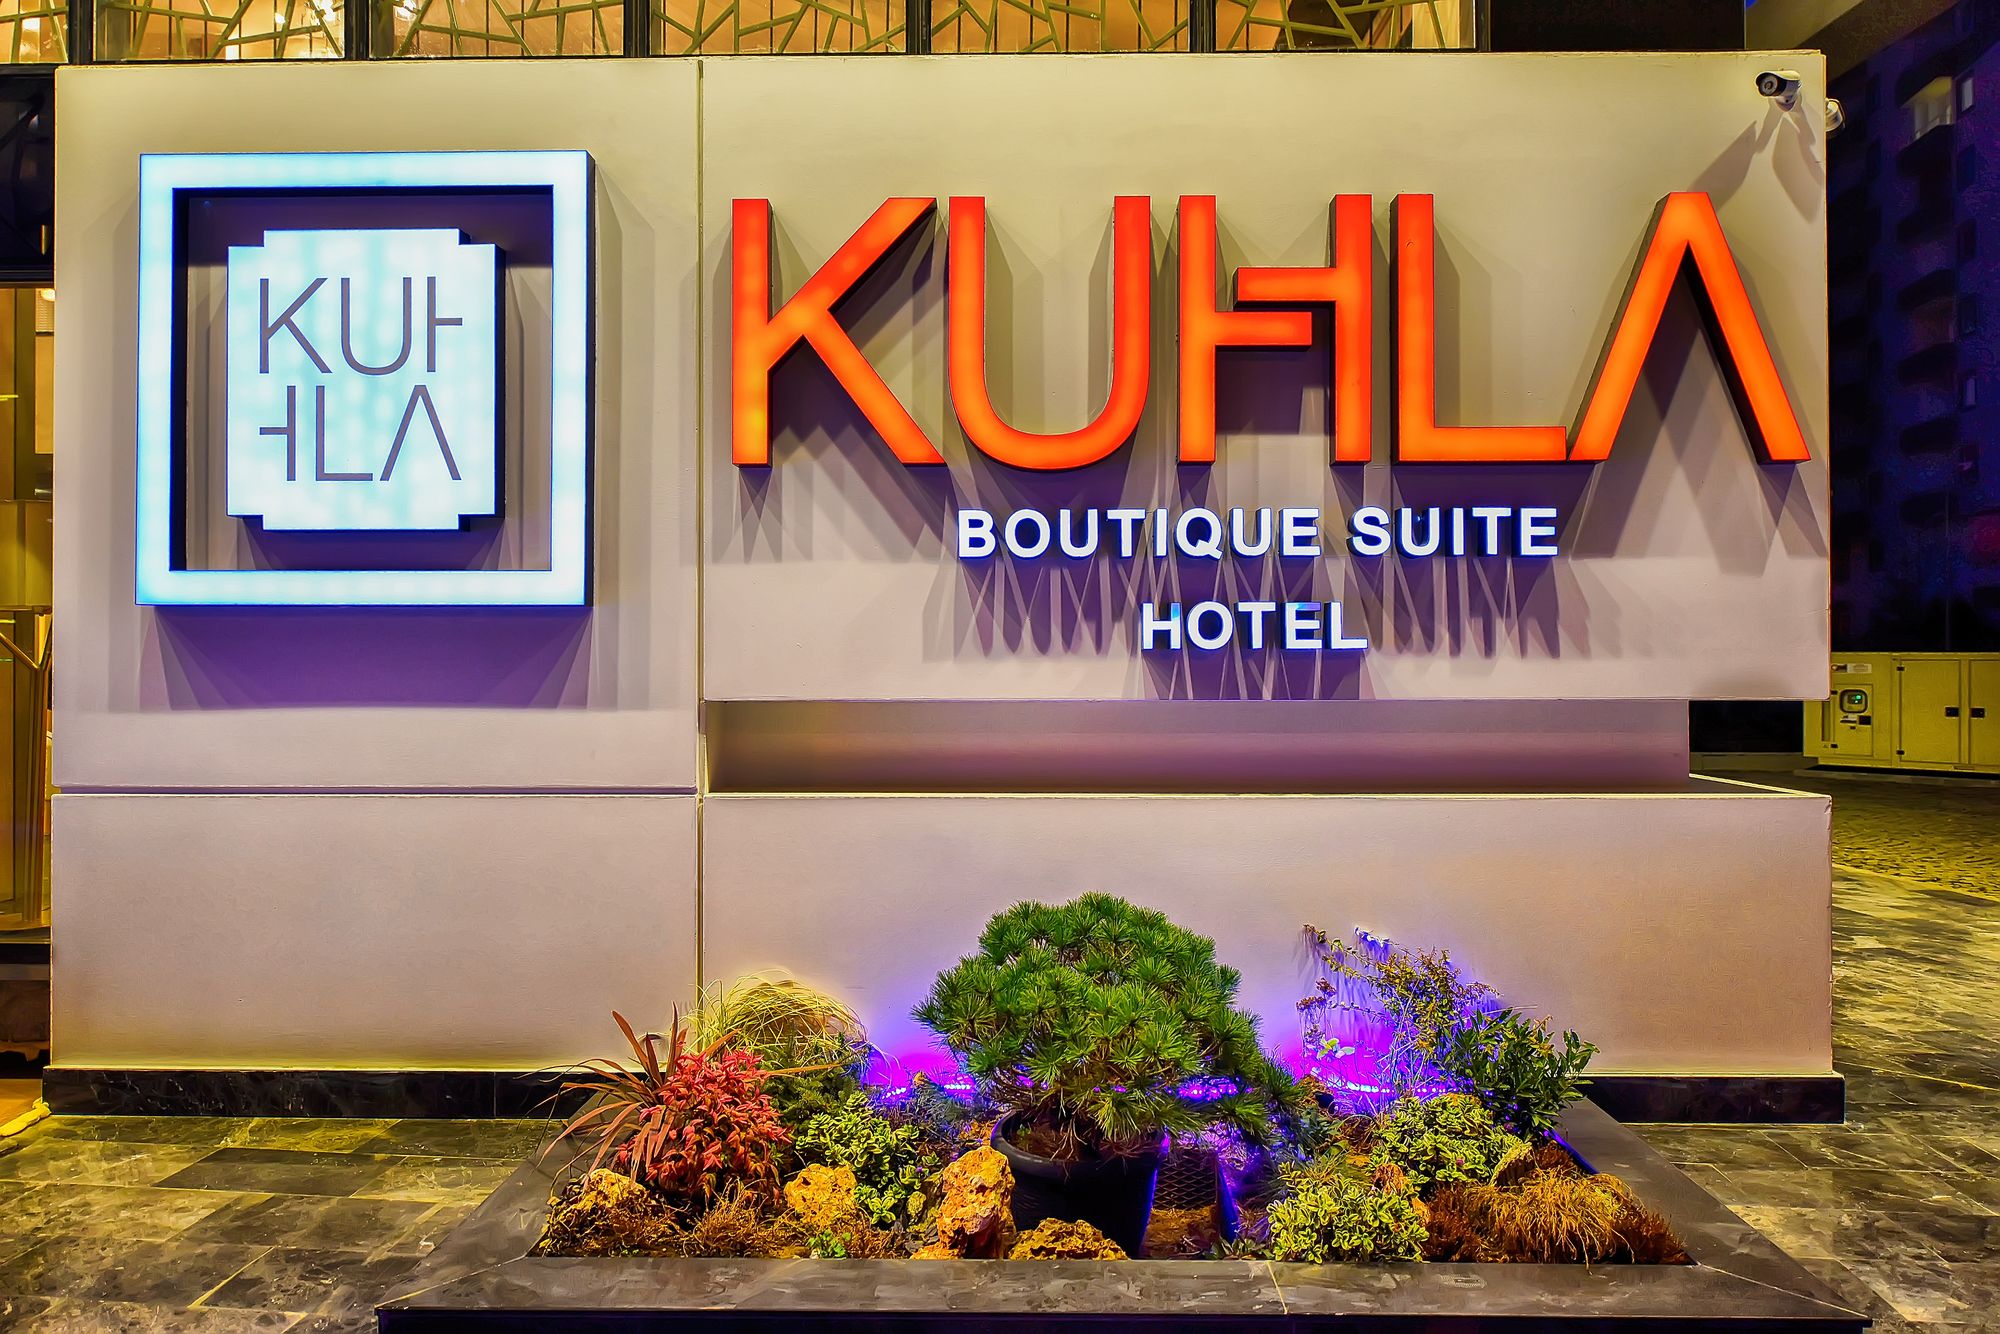 Kuhla Boutique Suite